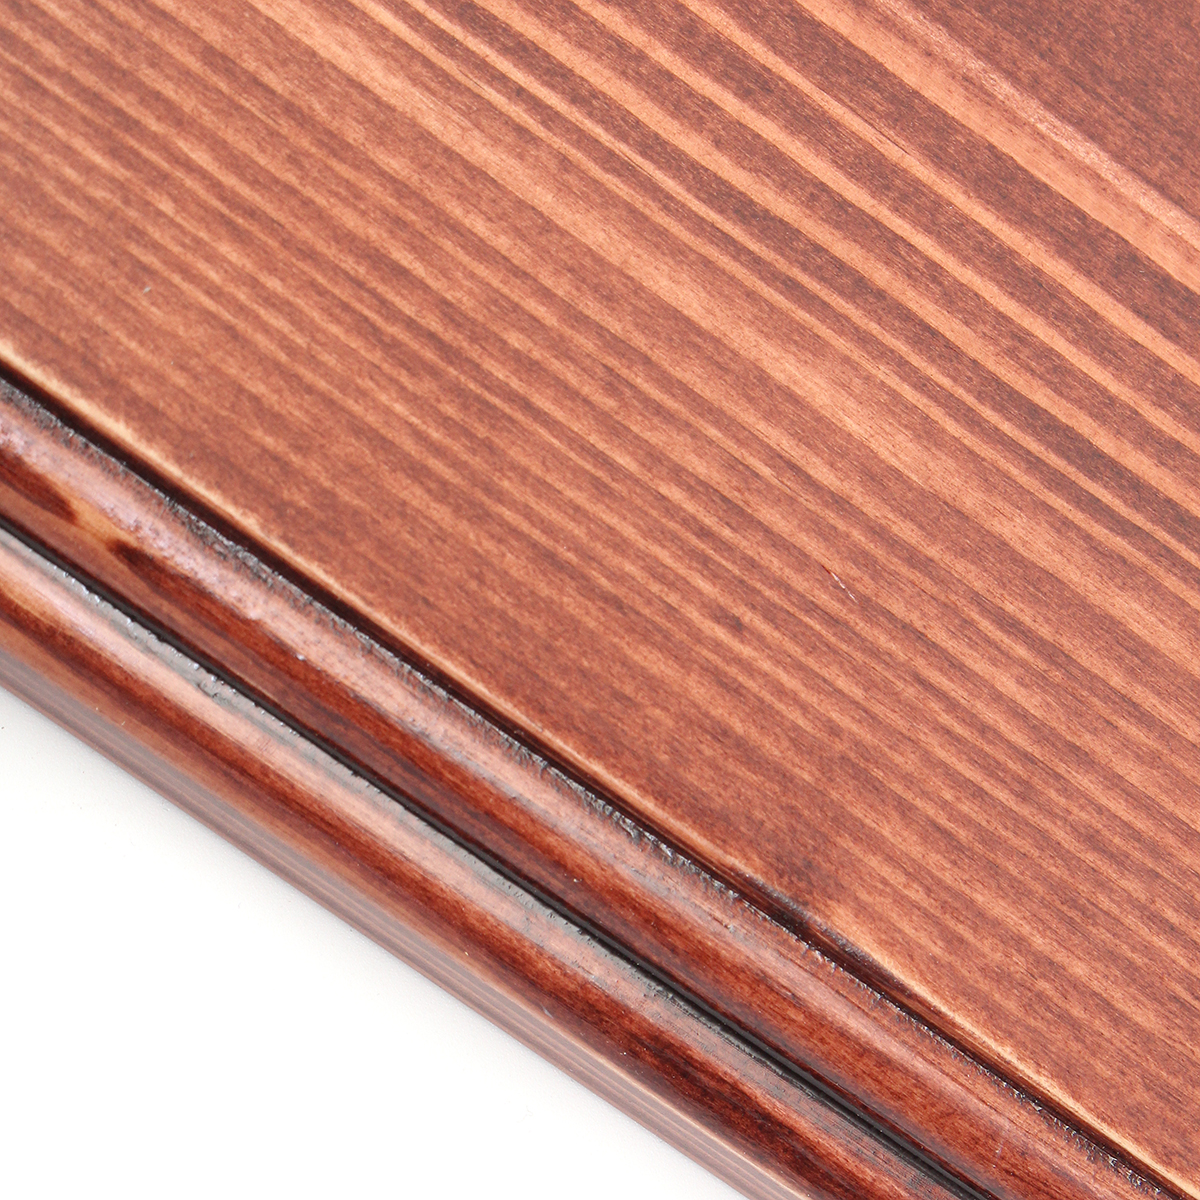 3Pcs-406080cm-Wooden-Board-Shelves-Wall-Mount-Floating-Shelf-Display-Bracket-Waterproof-Decor-1390599-10